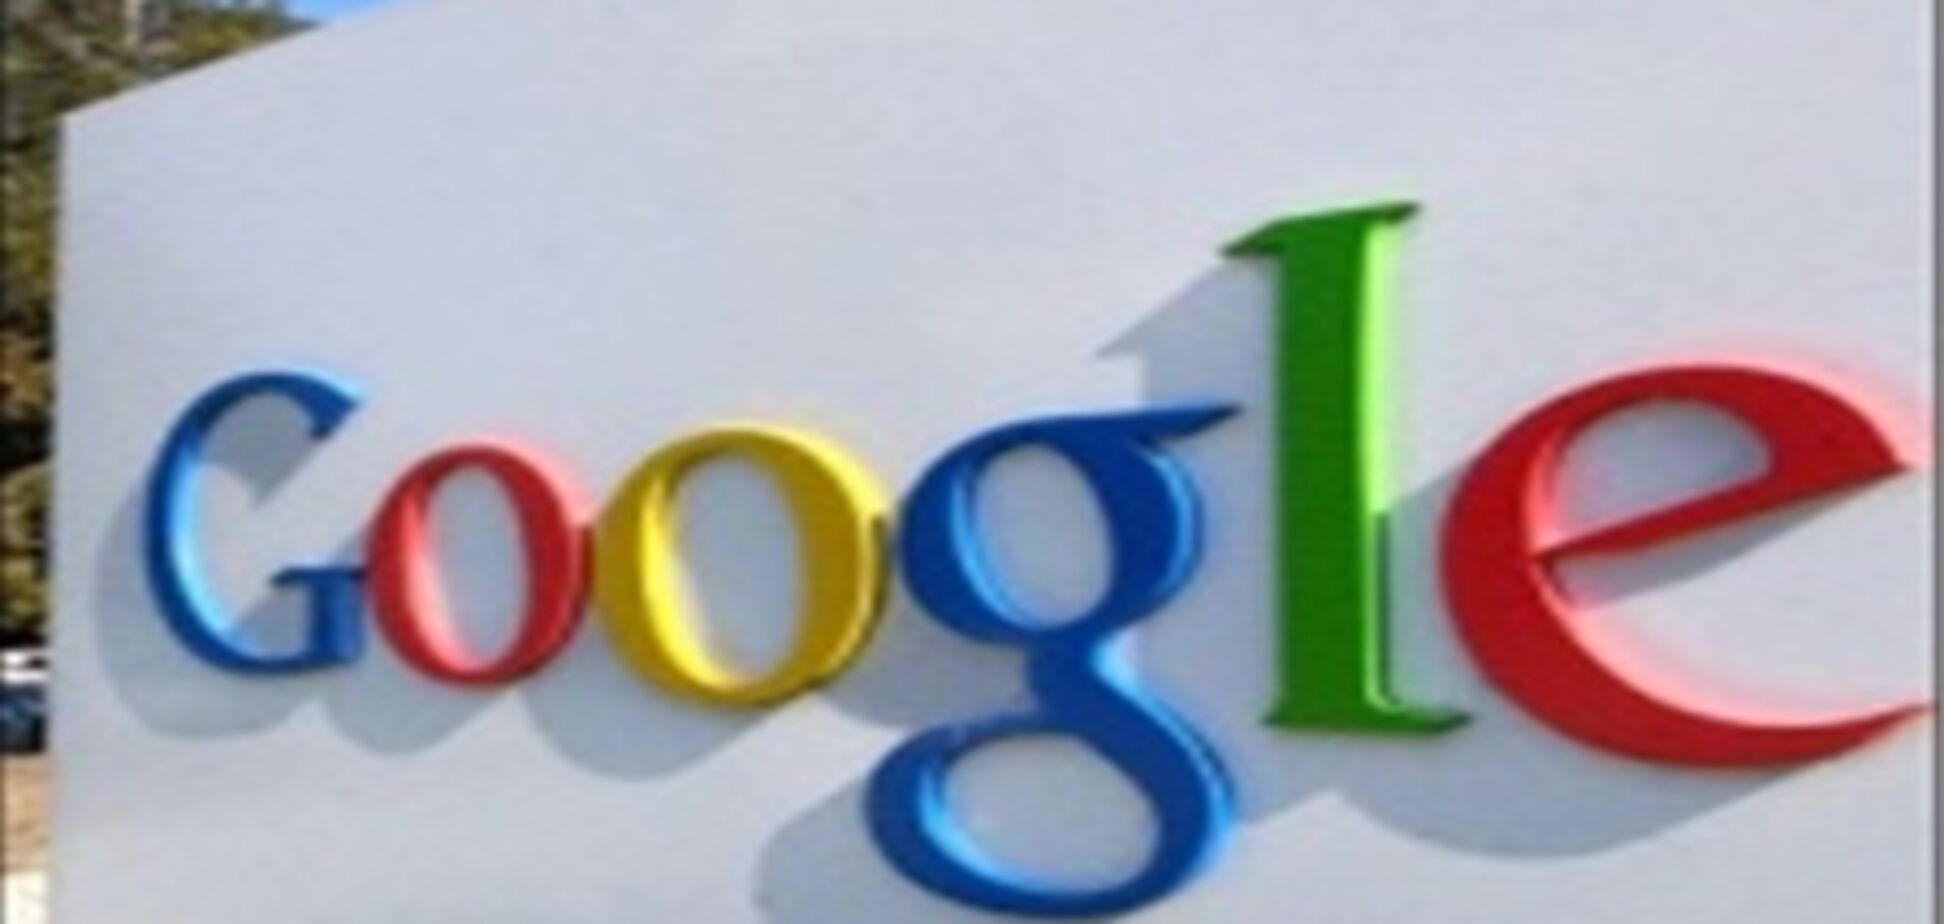 Google заплатит издательствам и писателям 125 млн. долларов